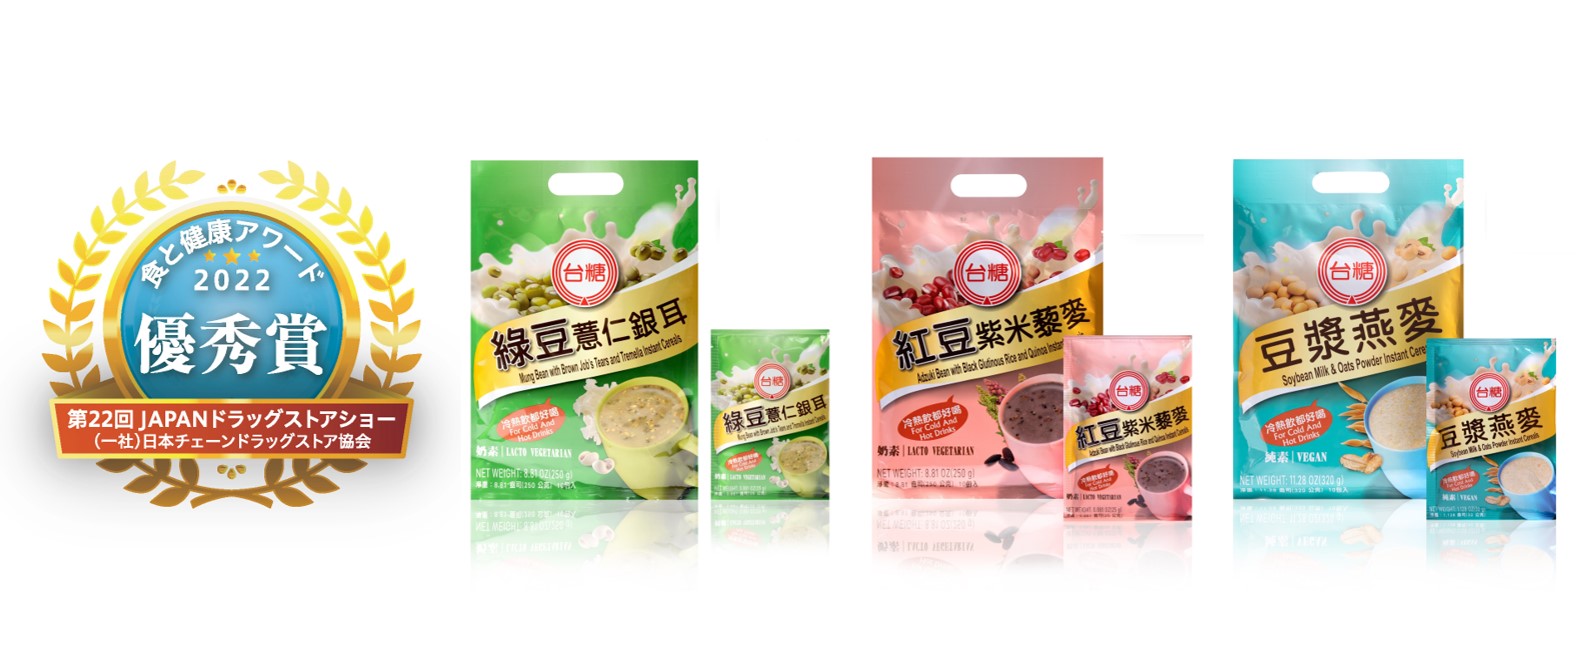 台湾ソフトパワー - 2022-08-16_「食と健康アワード2022」受賞、日本で注目を集める台湾糖業